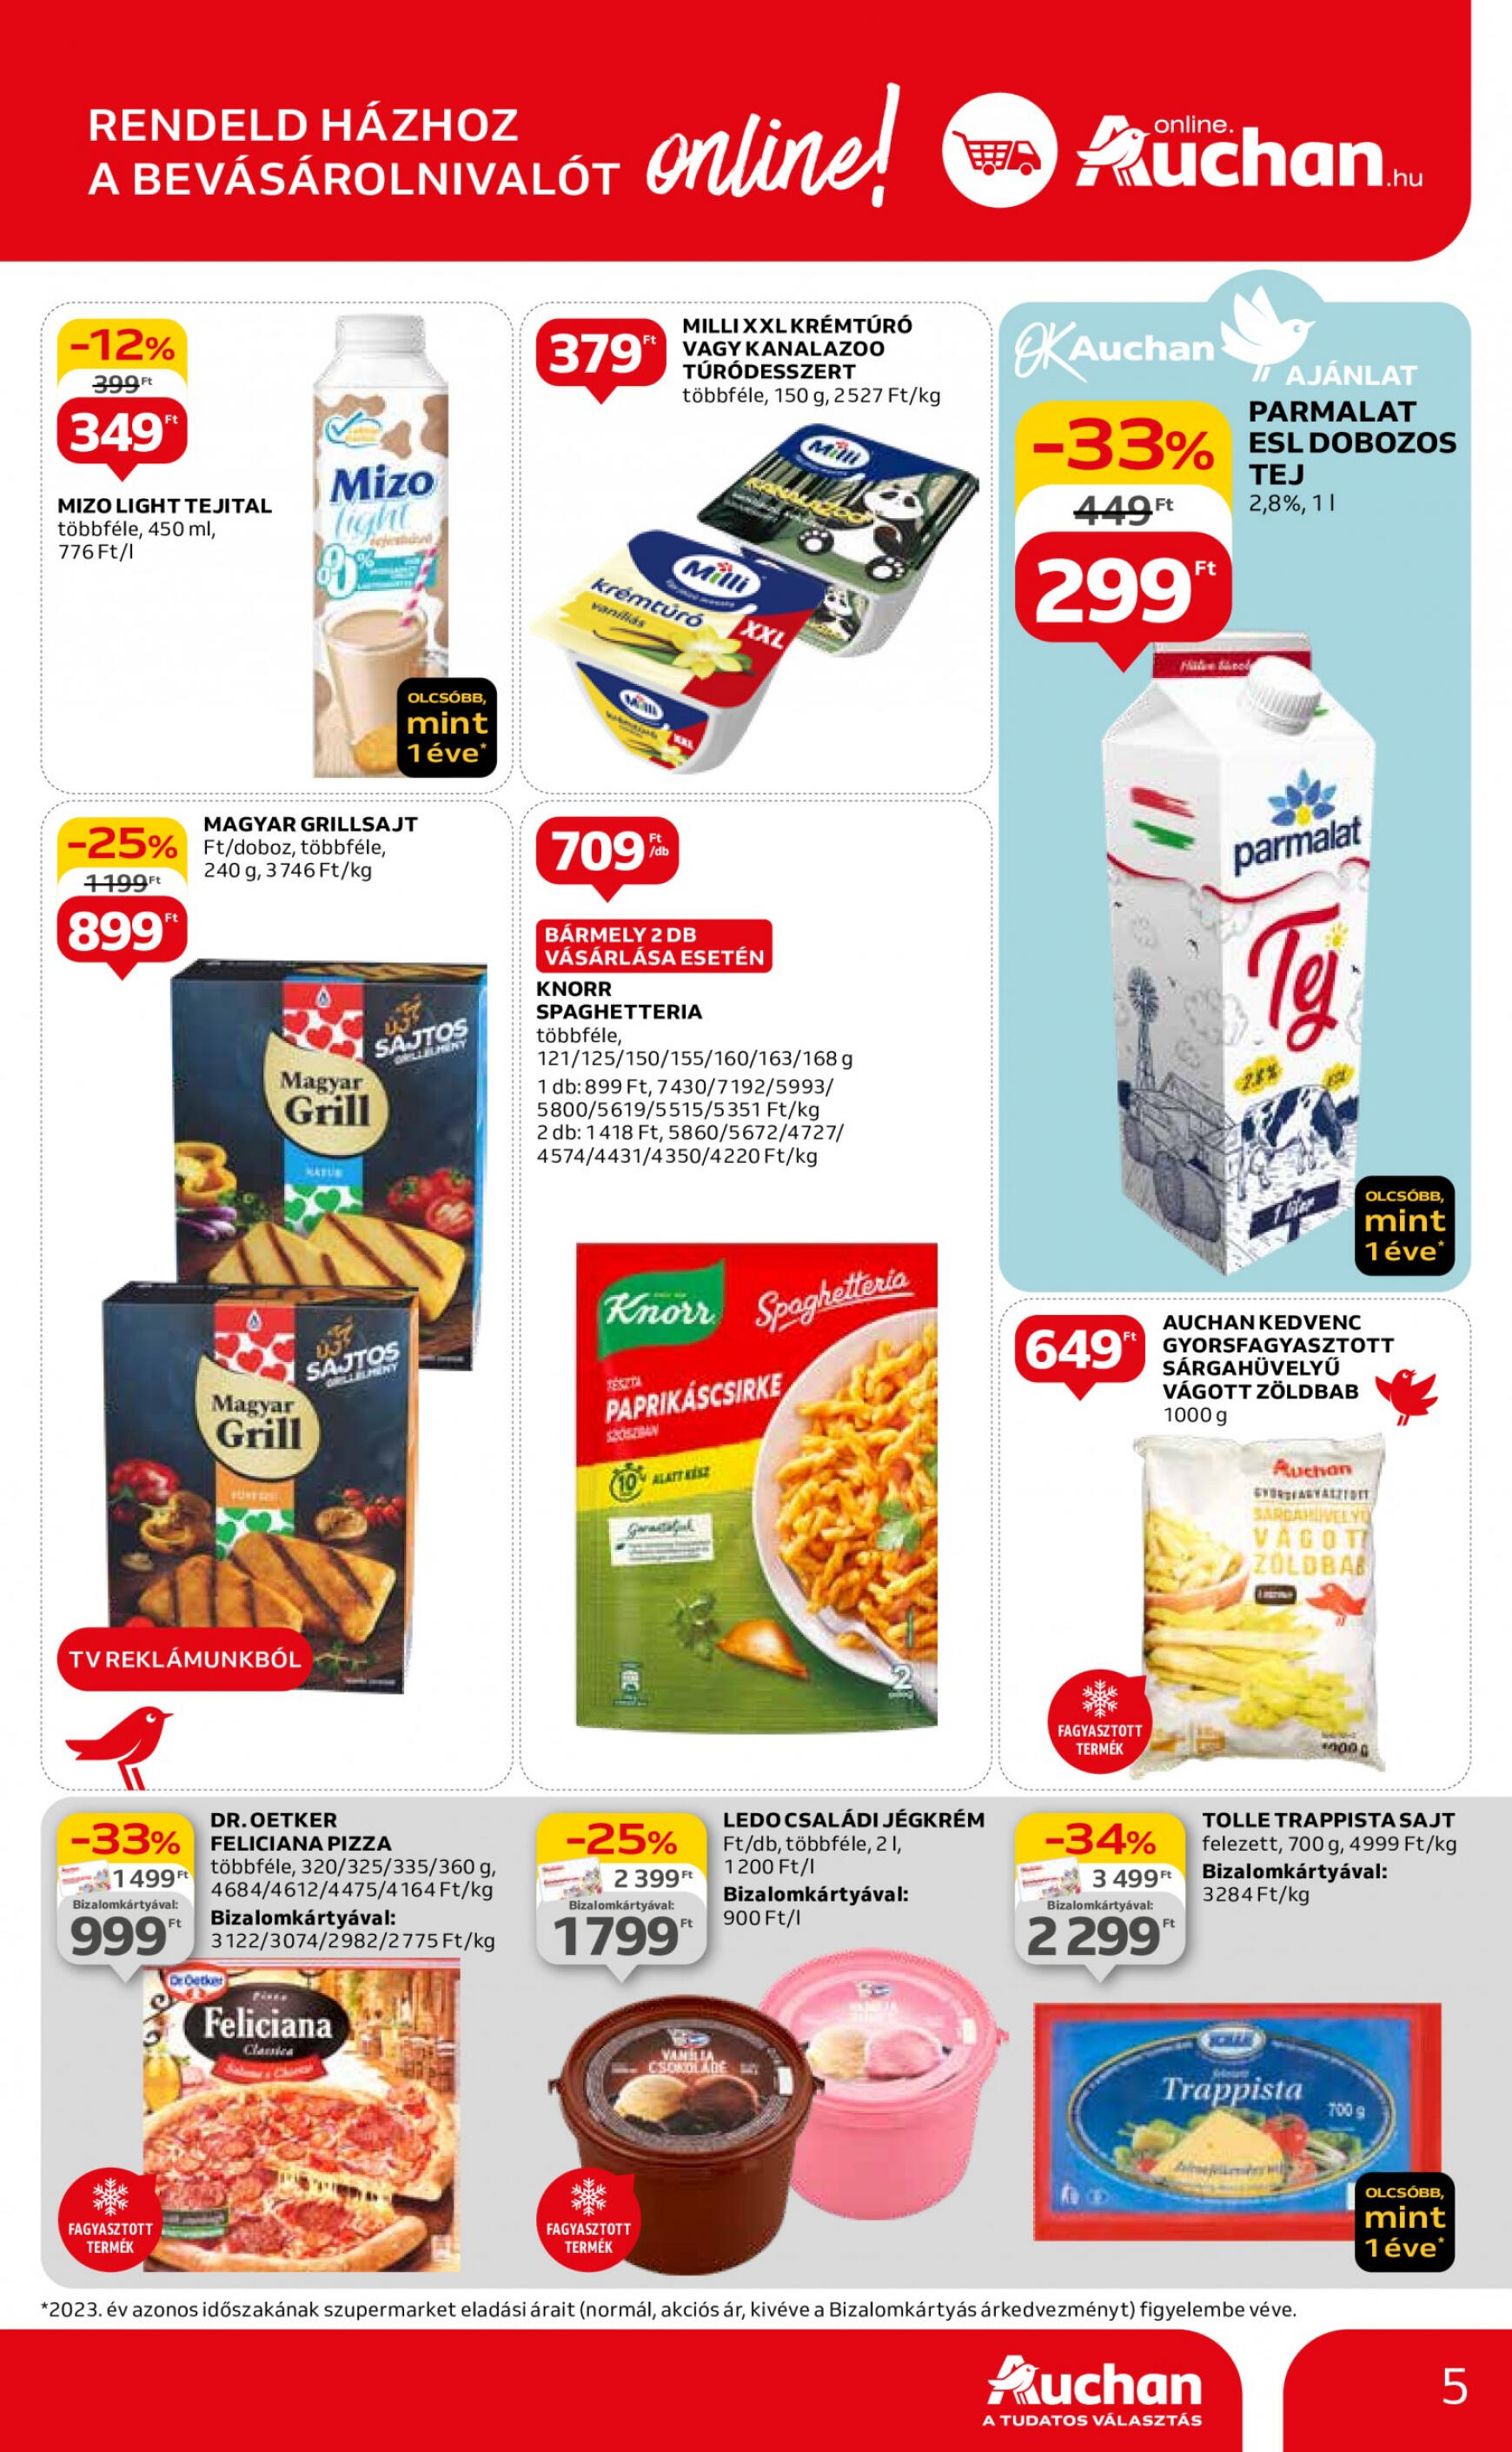 auchan - Aktuális újság Auchan szupermarket 04.18. - 04.24. - page: 5